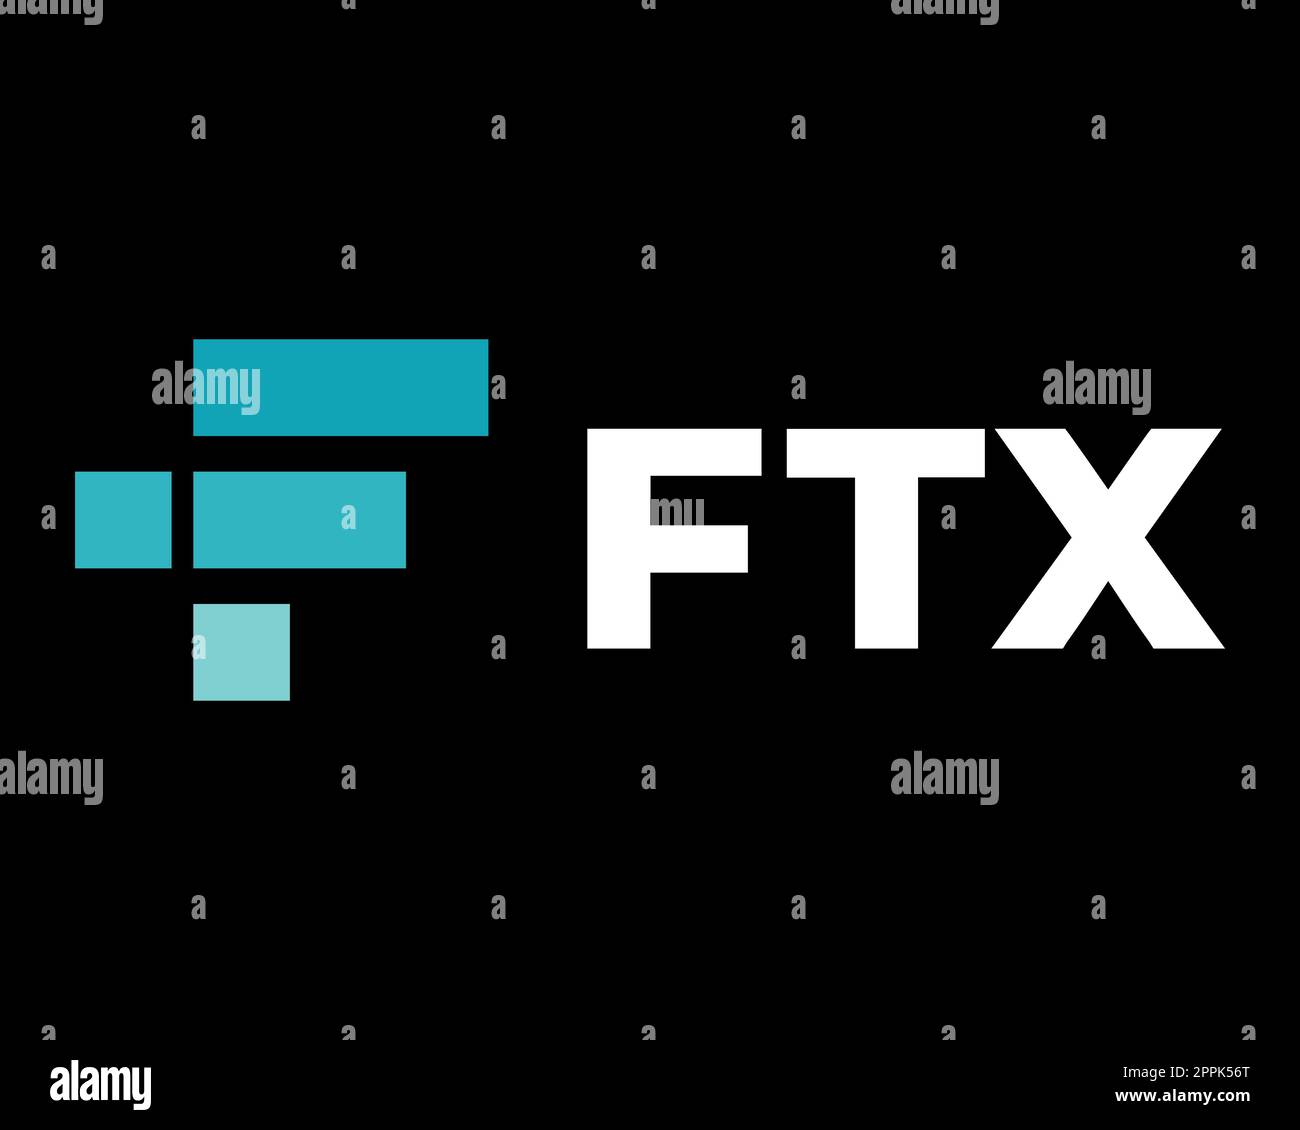 FTX Token - l'effondrement de la crypto-bourse. Logo de crypto-monnaie symbole FTT avec texte. Icône de pièce isolée sur fond noir. Illustration vectorielle. Banque D'Images